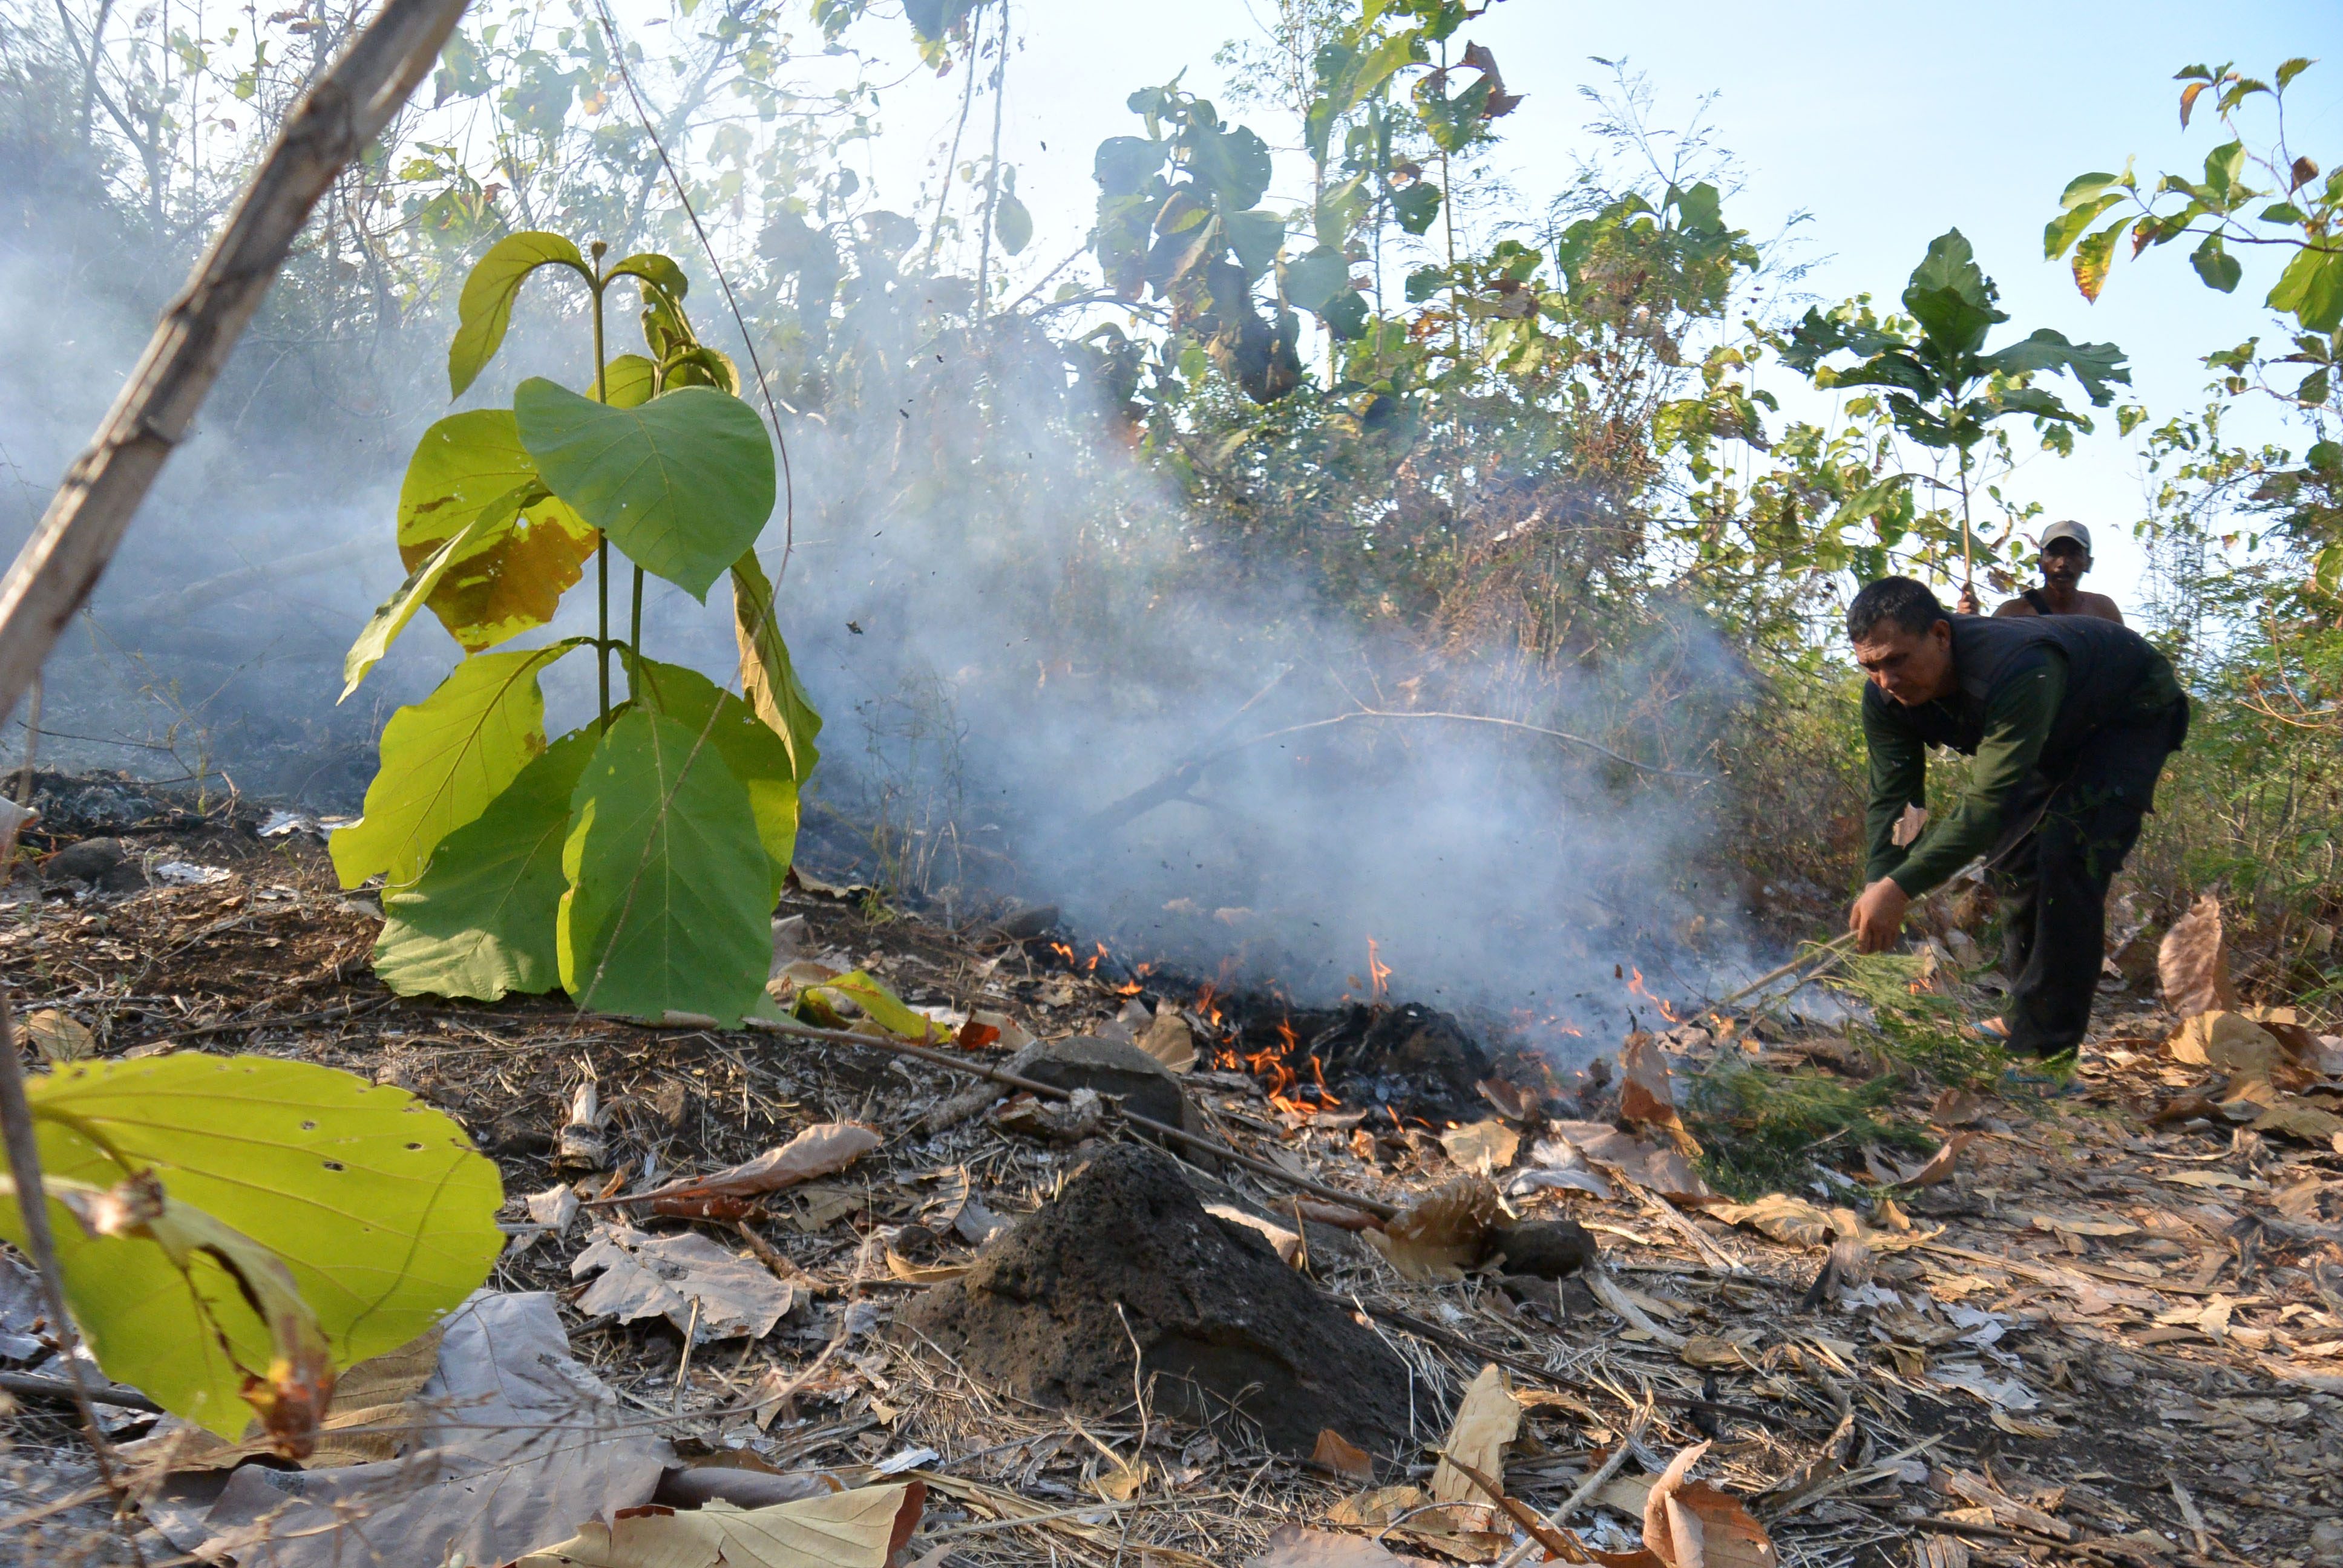 ILUSTRASI. Petugas Perum Perhutani dan warga berusaha memadamkan api di kawasan hutan Petak 48 Resor Pemangkuan Hutan (RPH) Kendit, Situbondo, Jawa Timur, pada 10 September 2016. Foto oleh Seno/Antara 